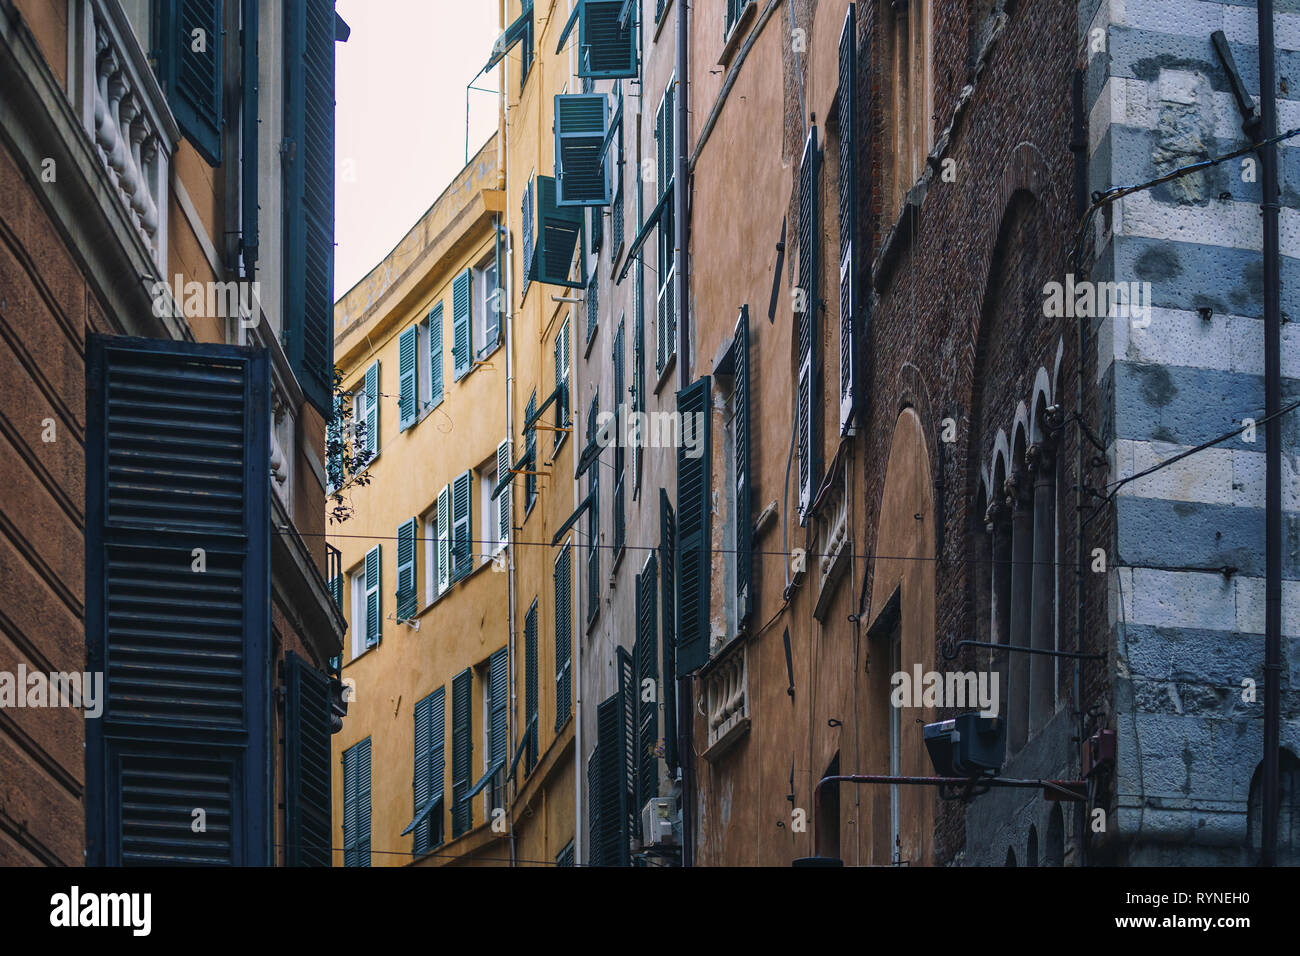 GENOA, ITALY - NOVEMBER 04, 2018 - Narrow streets of Genoa city Stock Photo